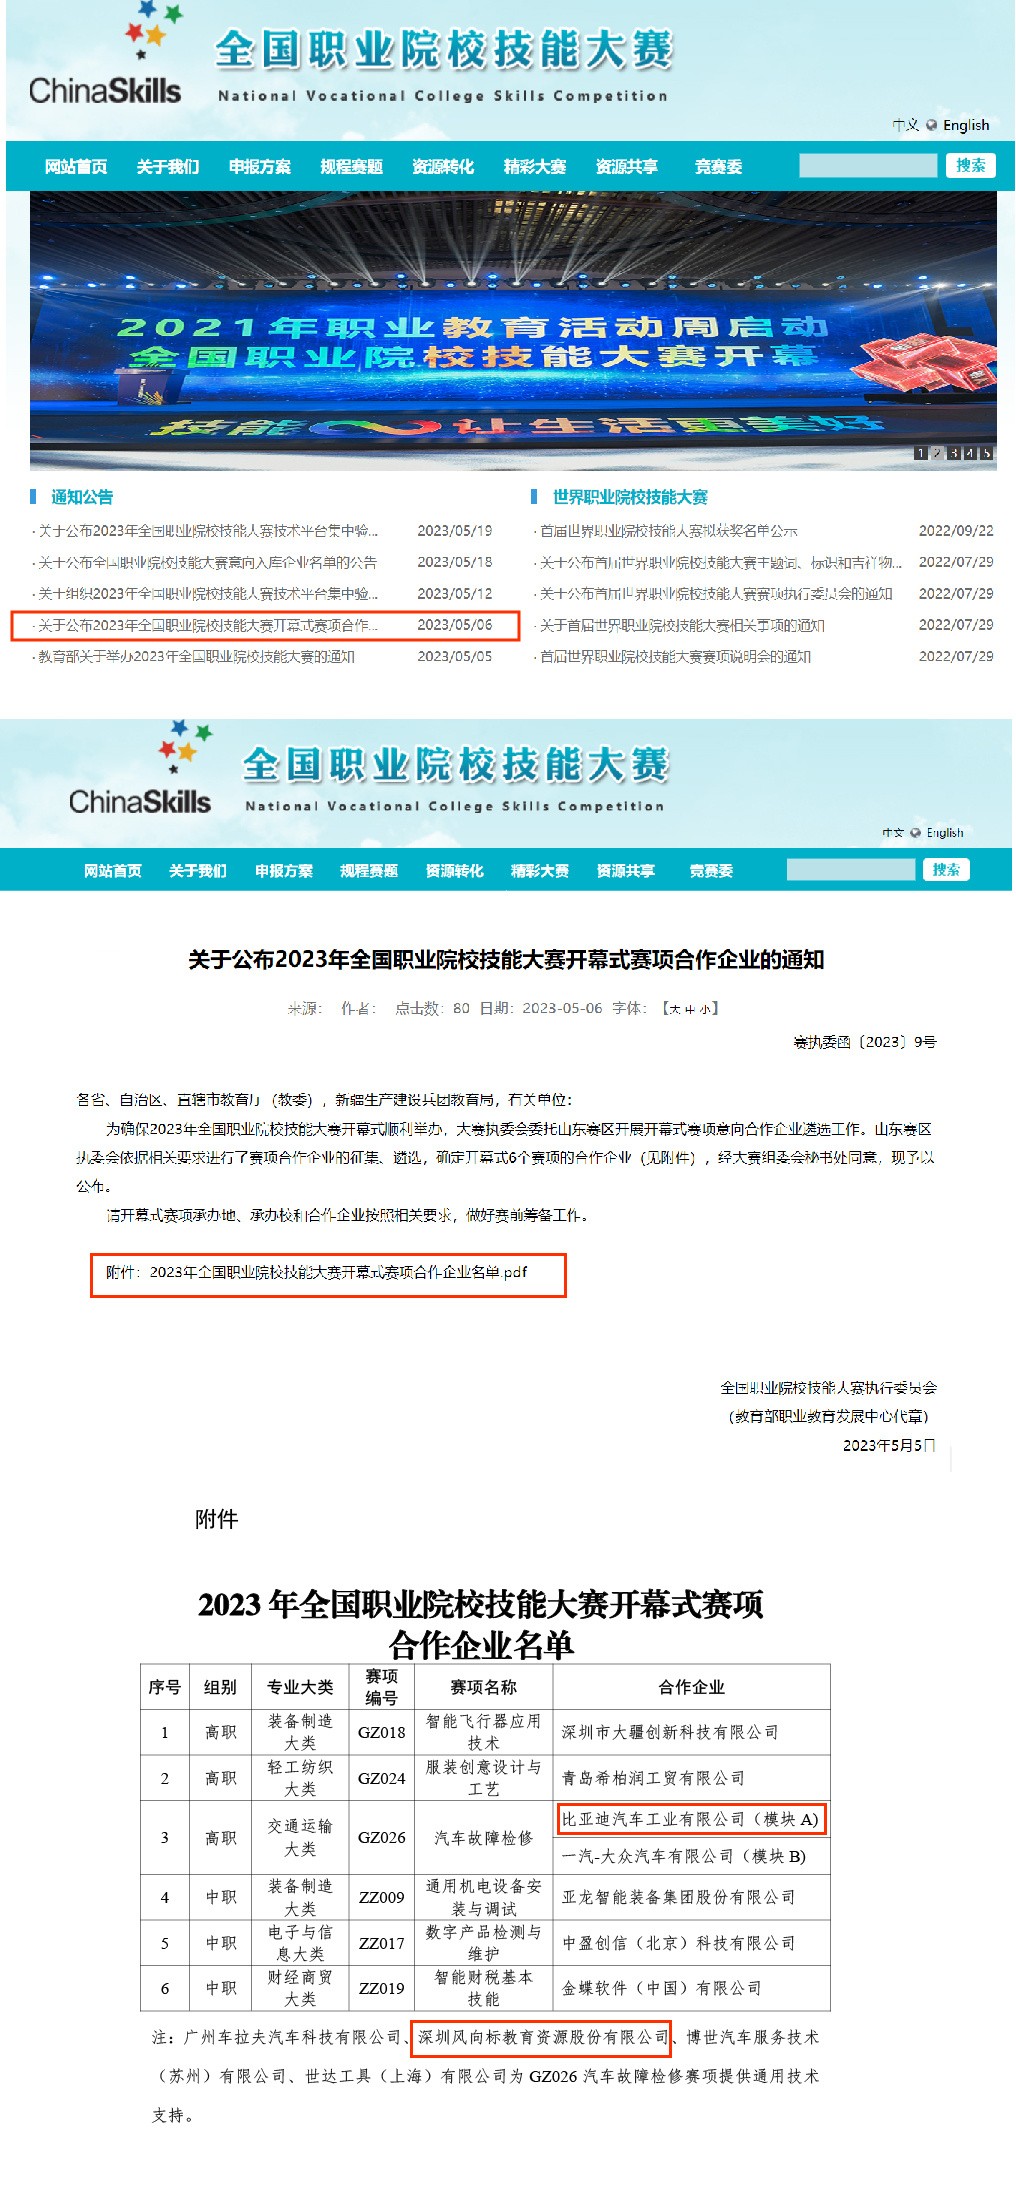 深圳風向標教育資源股份有限公司